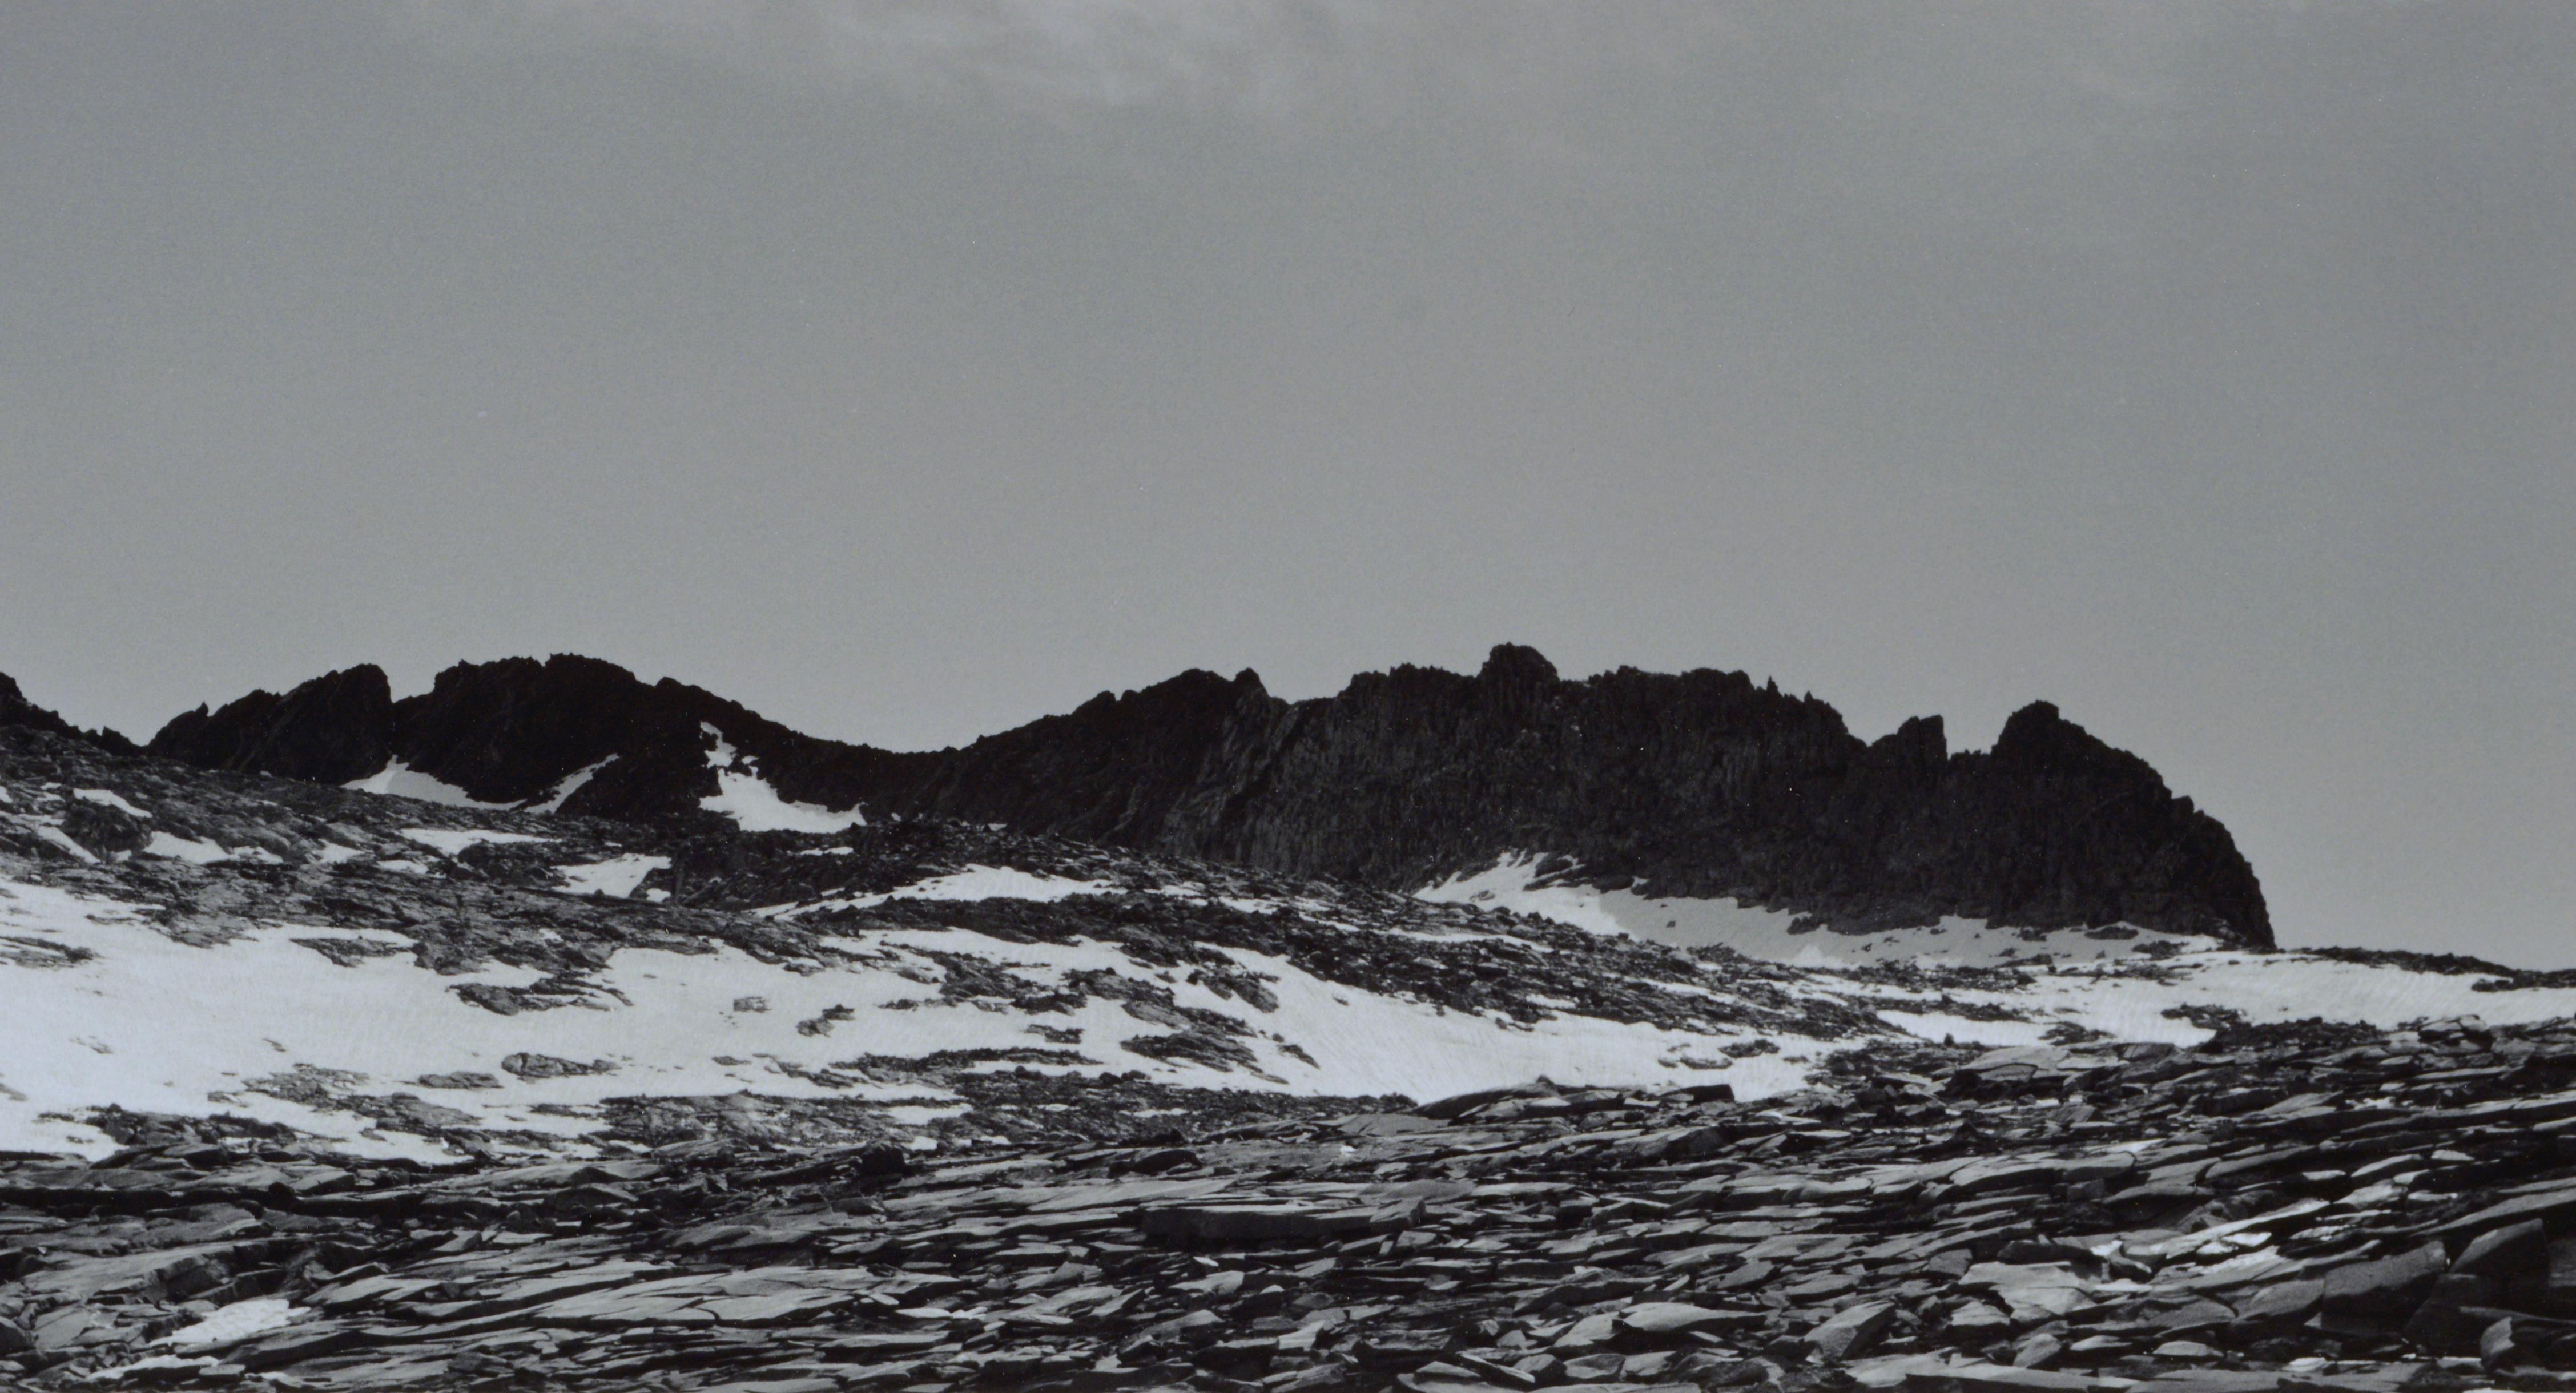 Elegantes handsigniertes Schwarz-Weiß-Foto von Charles Cramer (Amerikaner, geb. 1950), das den scharfen Kontrast zwischen der Yosemite-Bergkette des Mt. Lyell und den schönen Wolken darüber hervorhebt. Signiert 